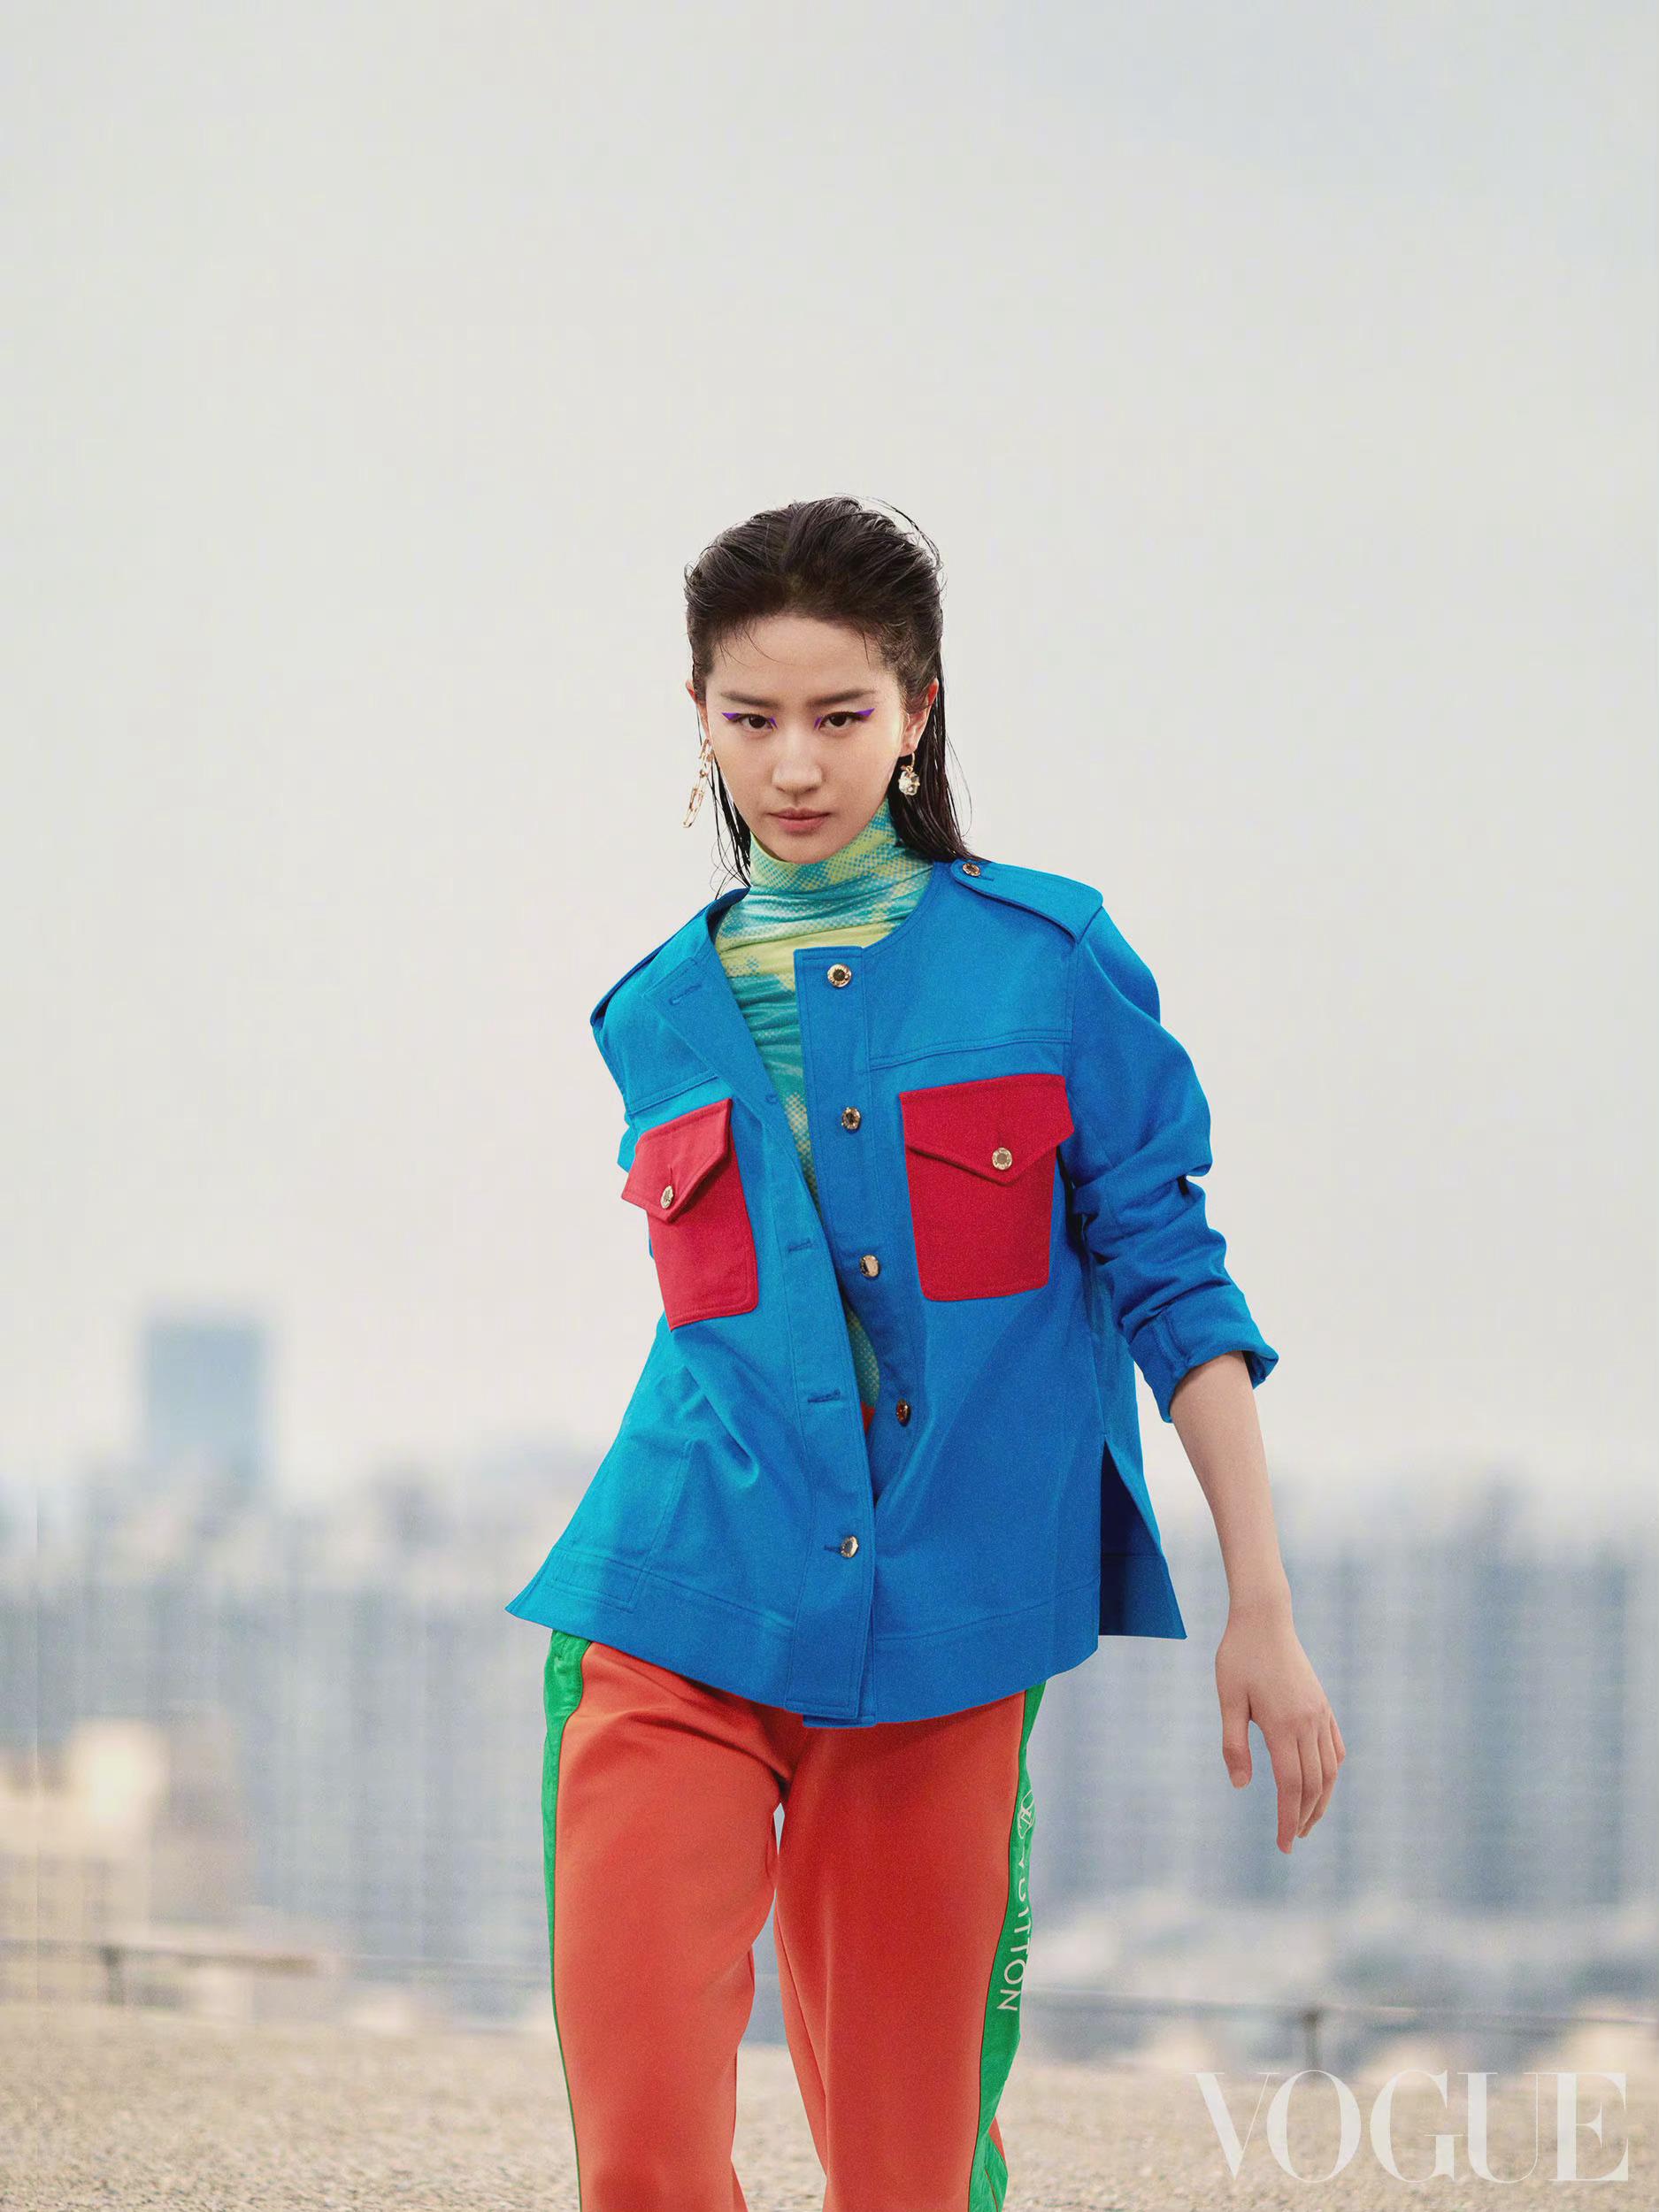 刘亦菲再登Vogue封面 化紫色猫眼妆演绎酷飒运动风,